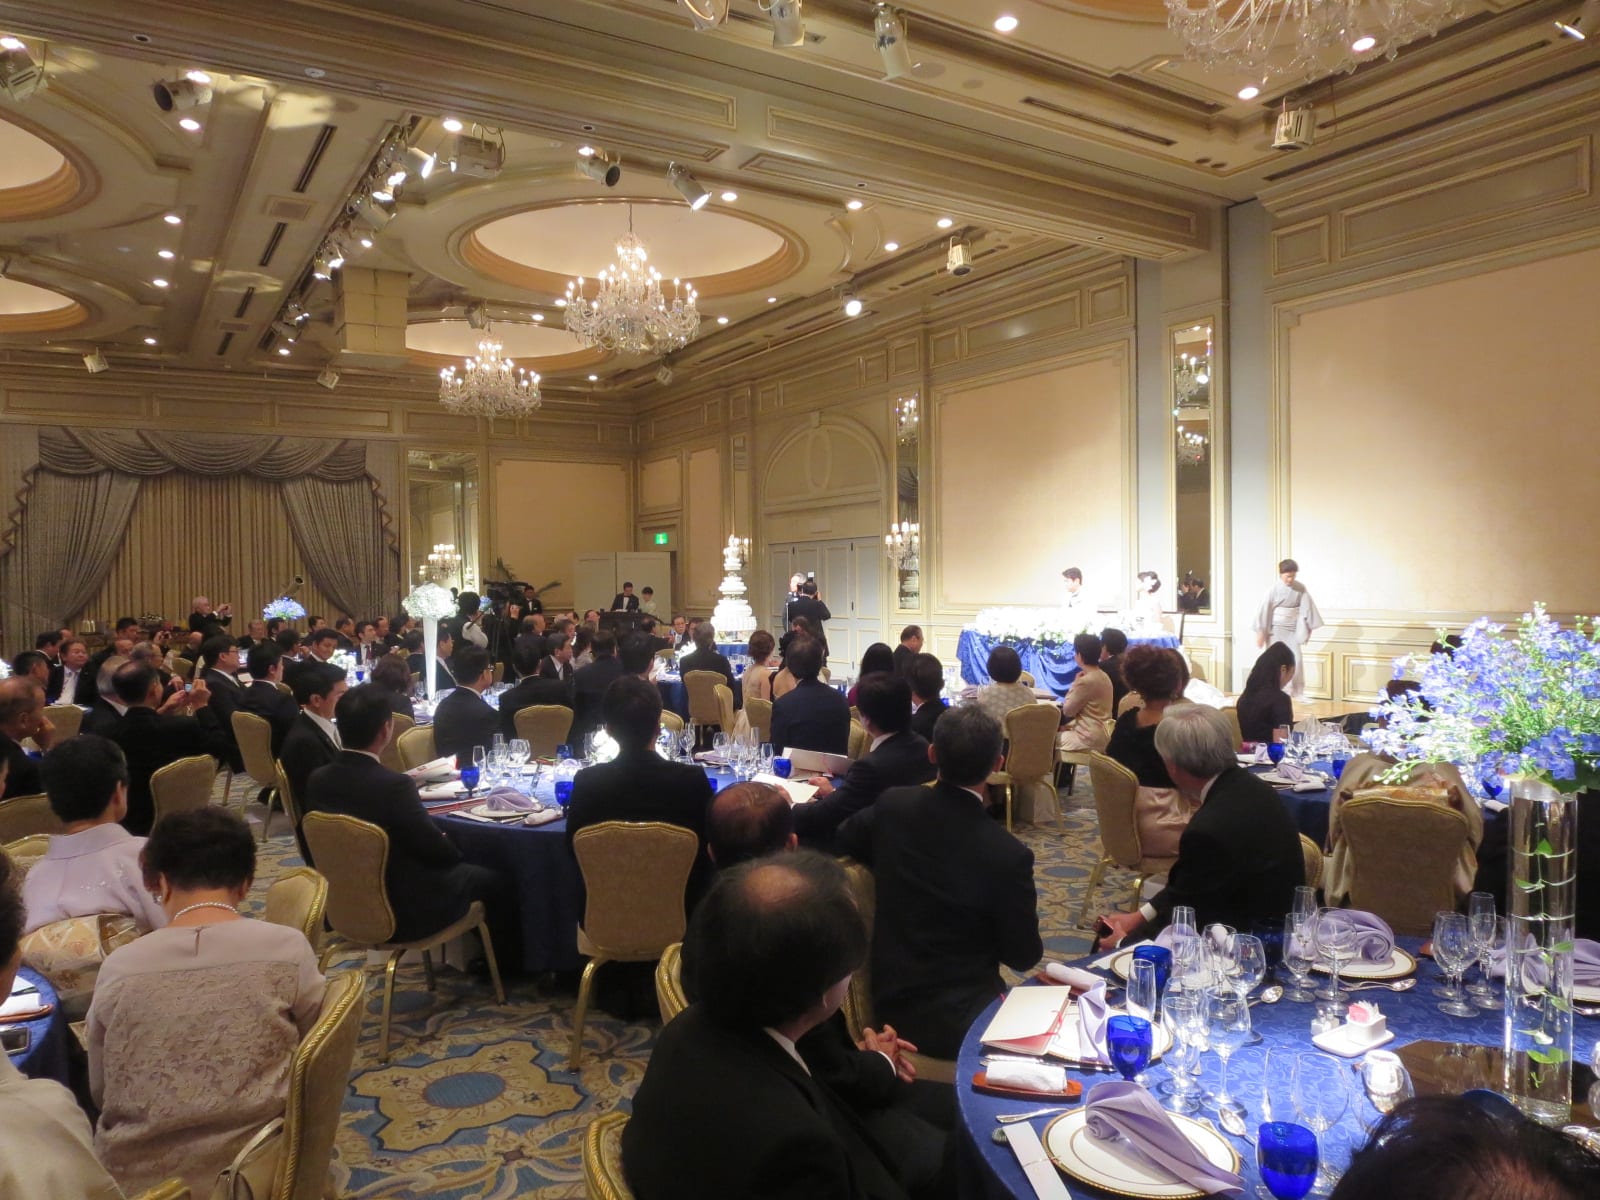 ９月７日 本日は松本洋平衆議院議員の結婚披露宴に出席しました 石井伸之の国立市議会議員日記 自由民主党会派所属